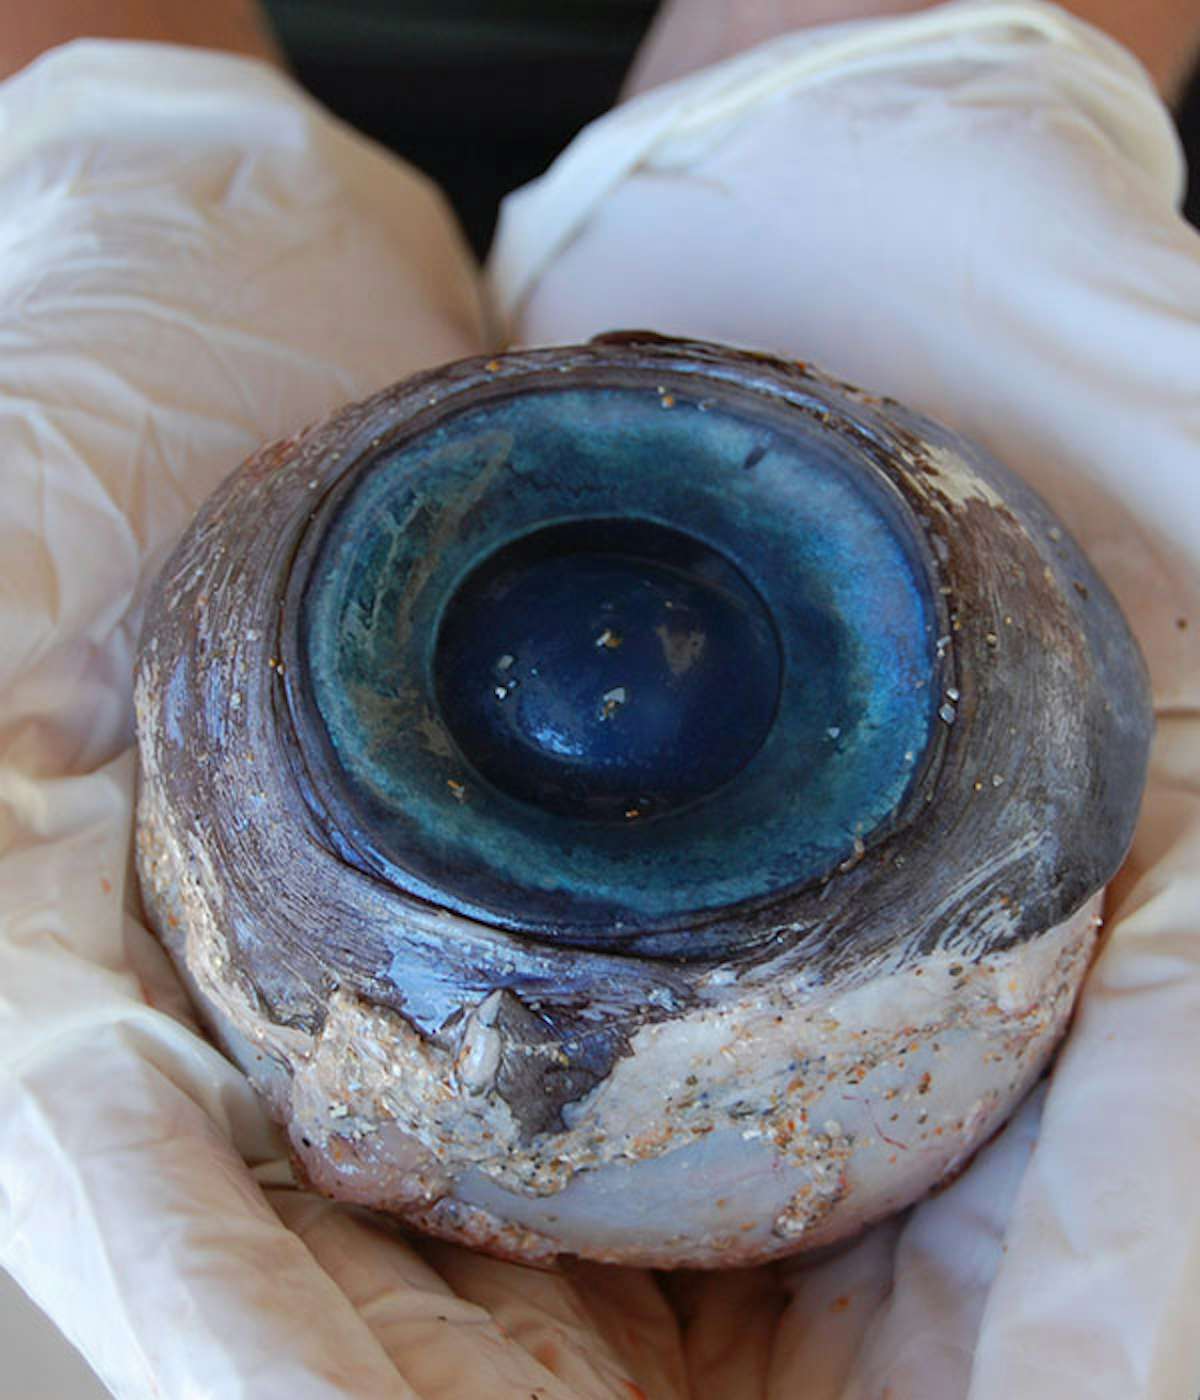 Giant eyeball found on a Florida beach